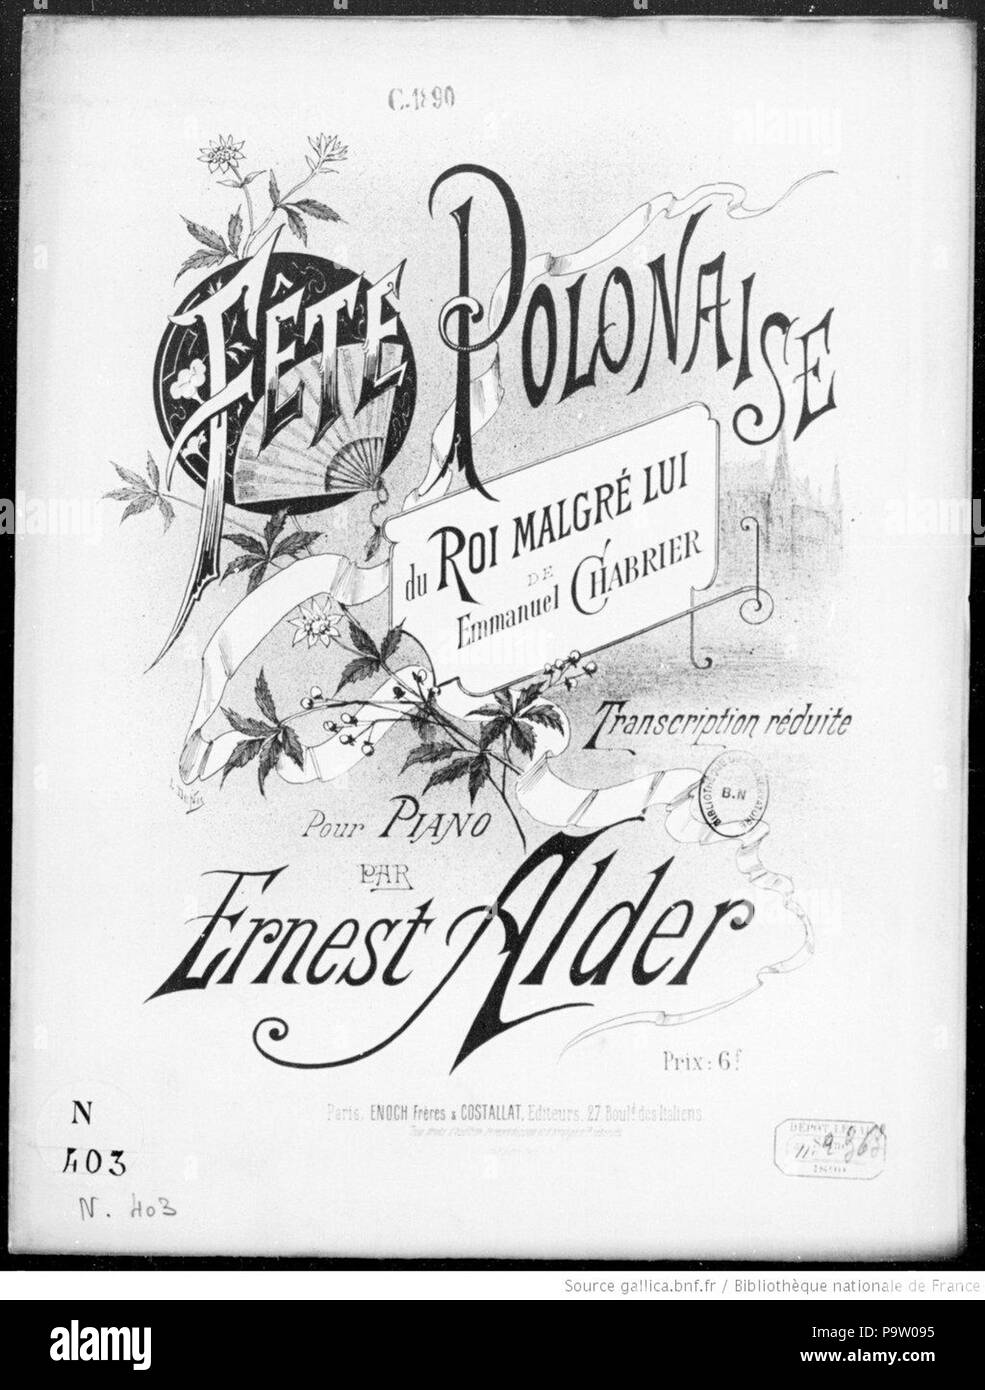 354 Cover of transcription of Fête polonaise du Roi malgré lui de Emmanuel Chabrier by Ernest Alder illustration by Louis Denis Stock Photo